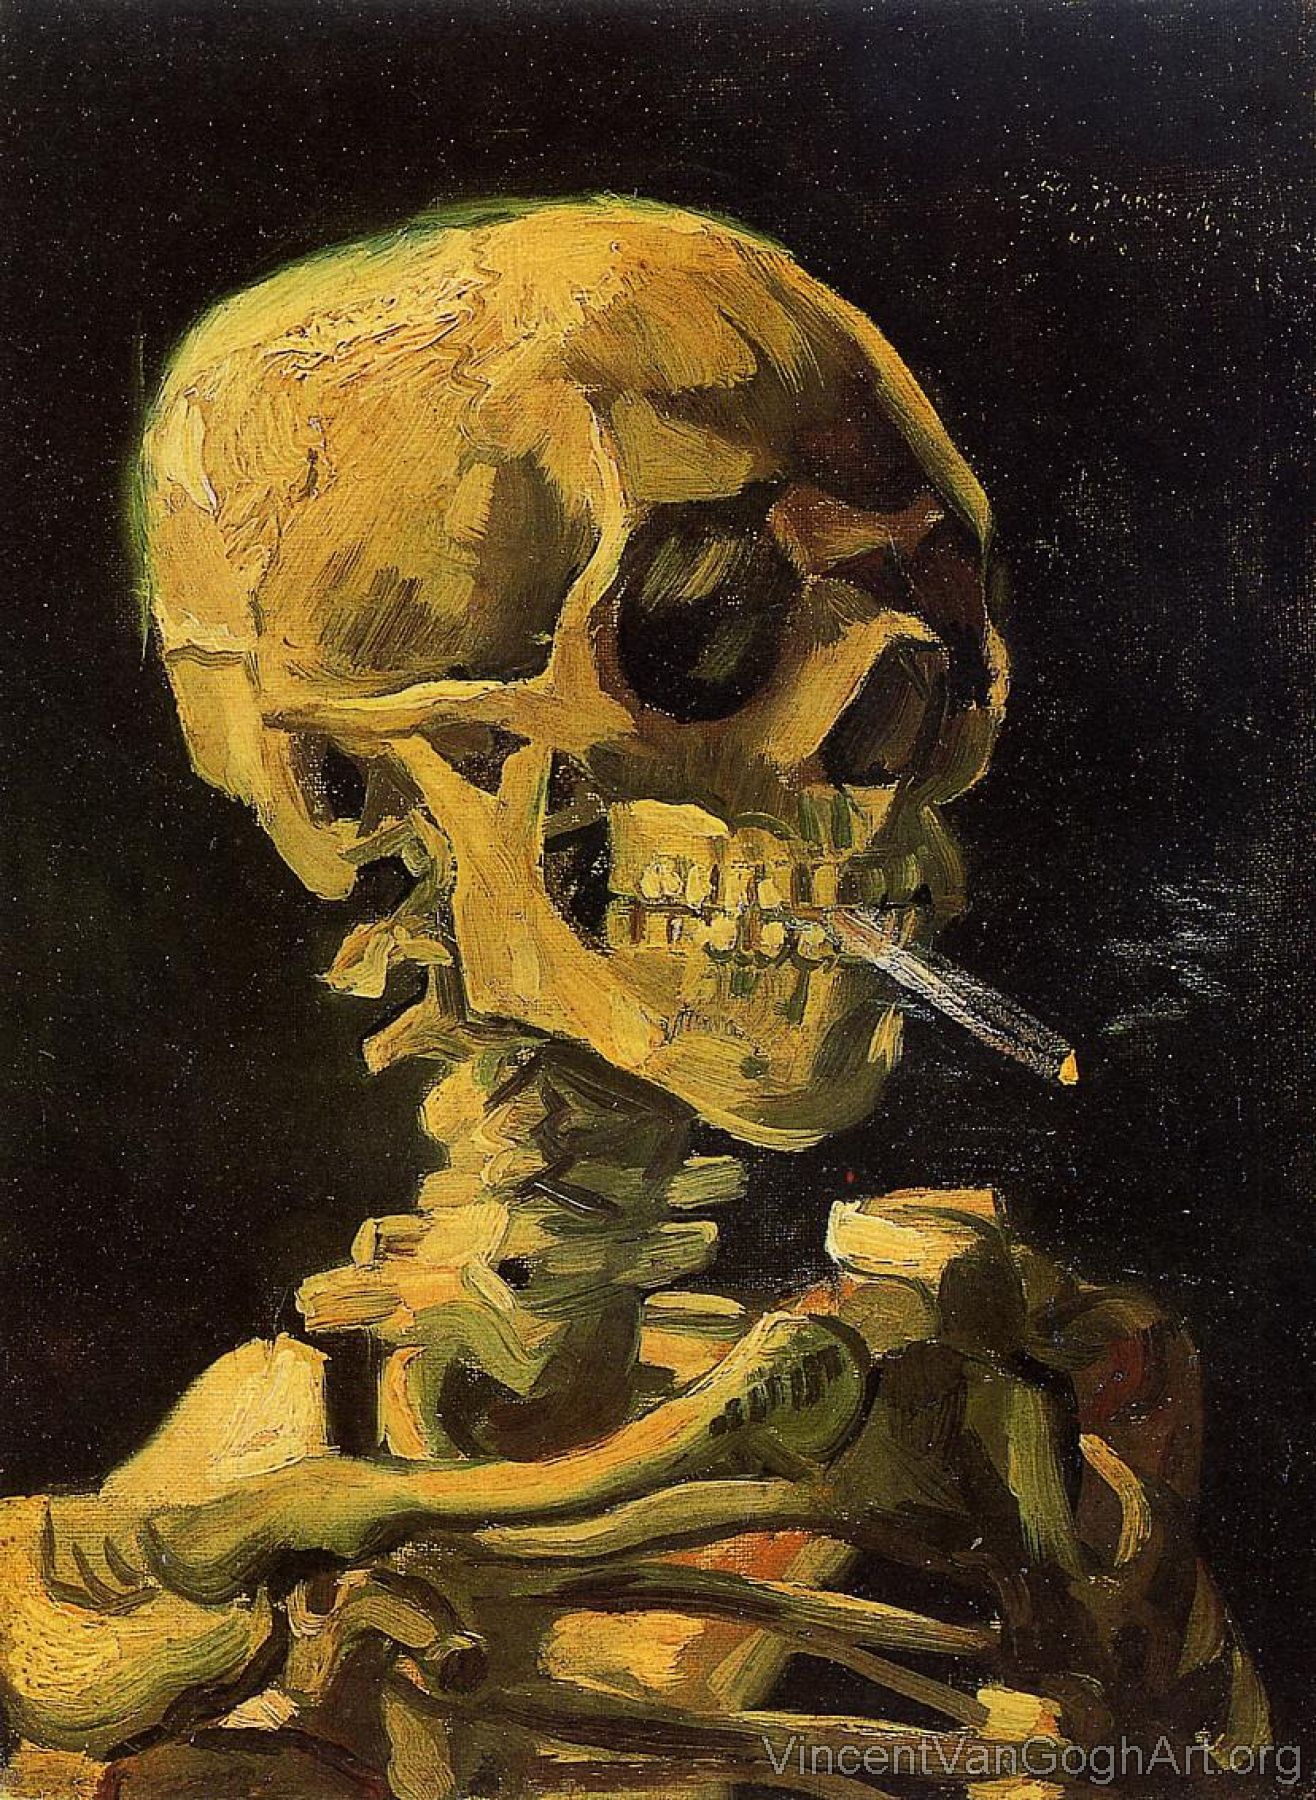 Skull Smoking a Cigarette